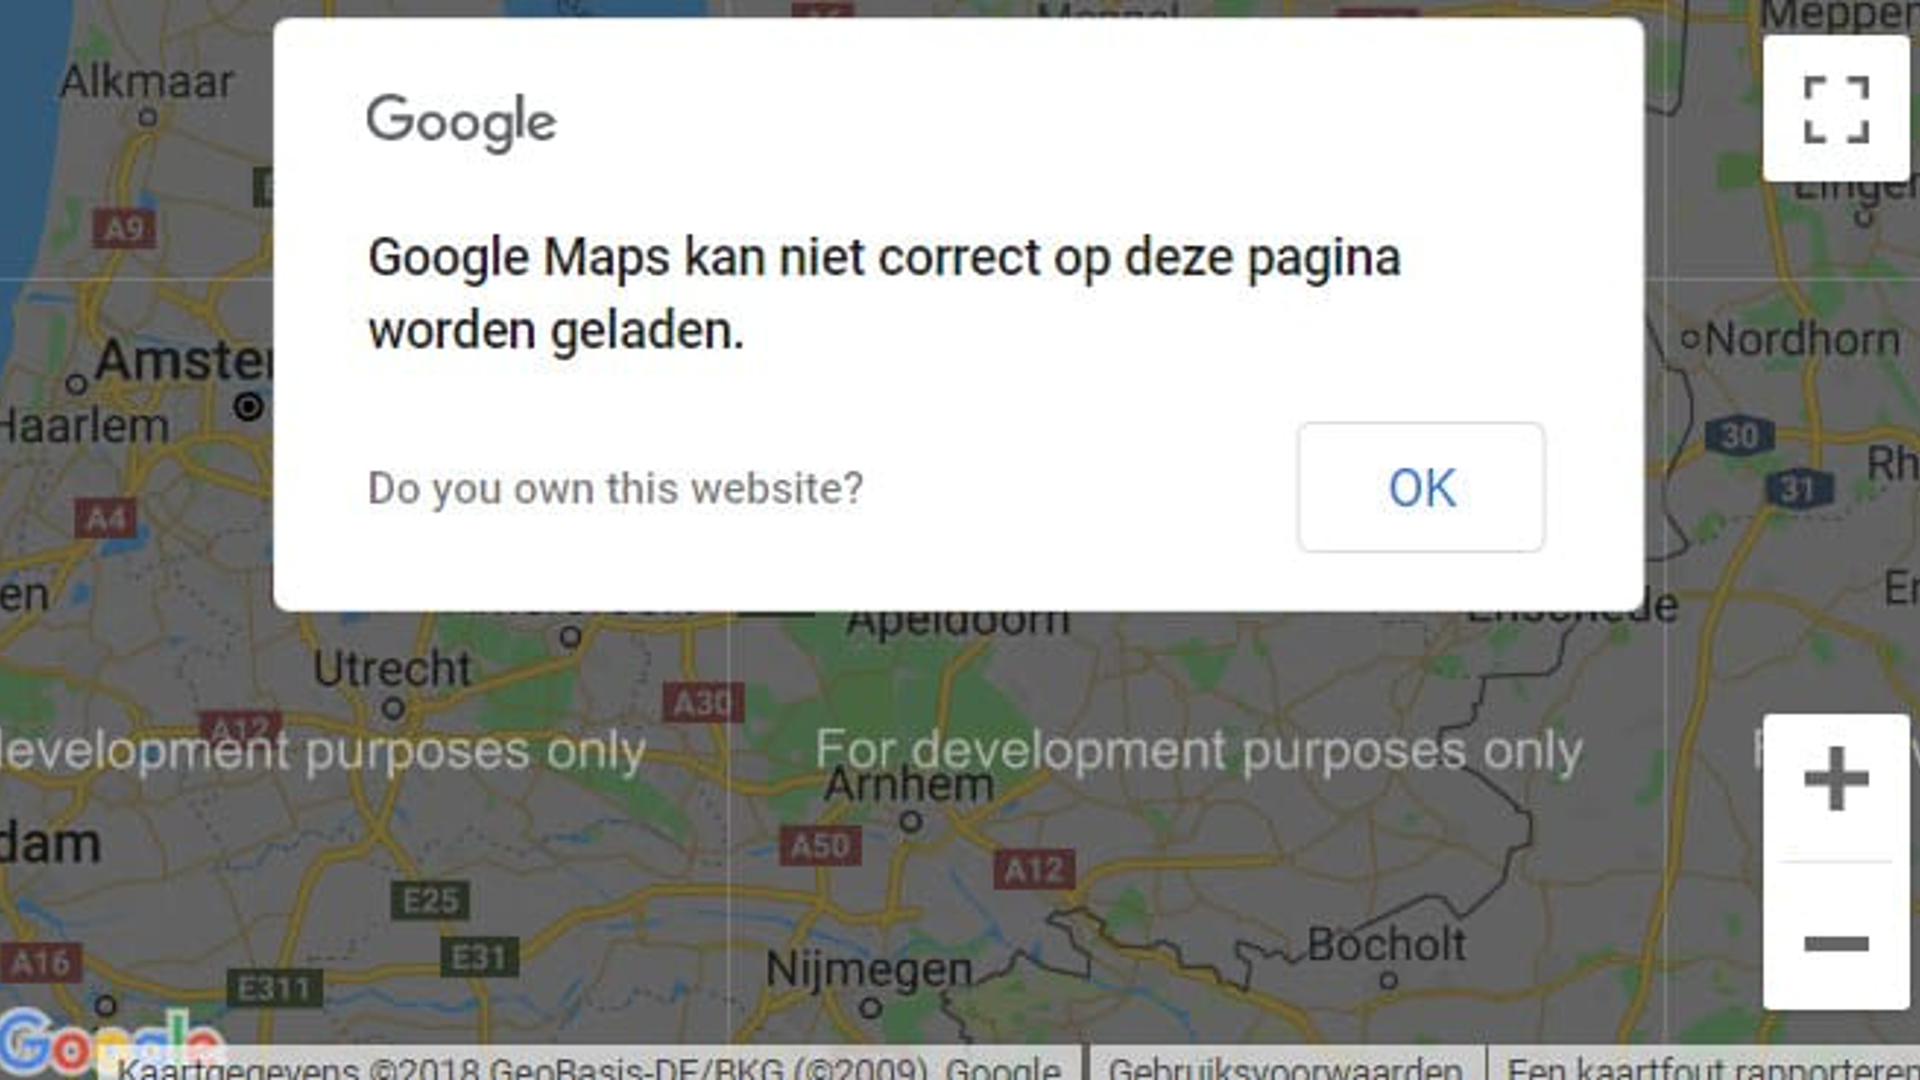 googlemaps fail png.png